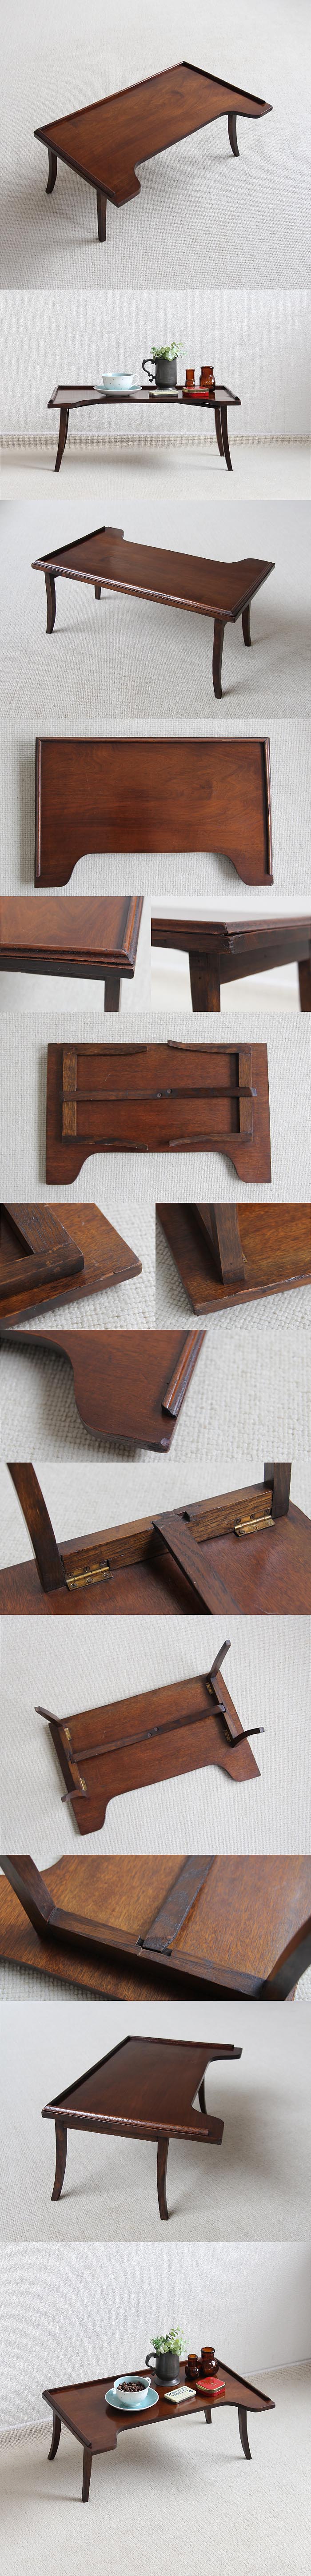 イギリス アンティーク 折りたたみテーブル 木製 フォールディング家具「ローテーブル」P-276